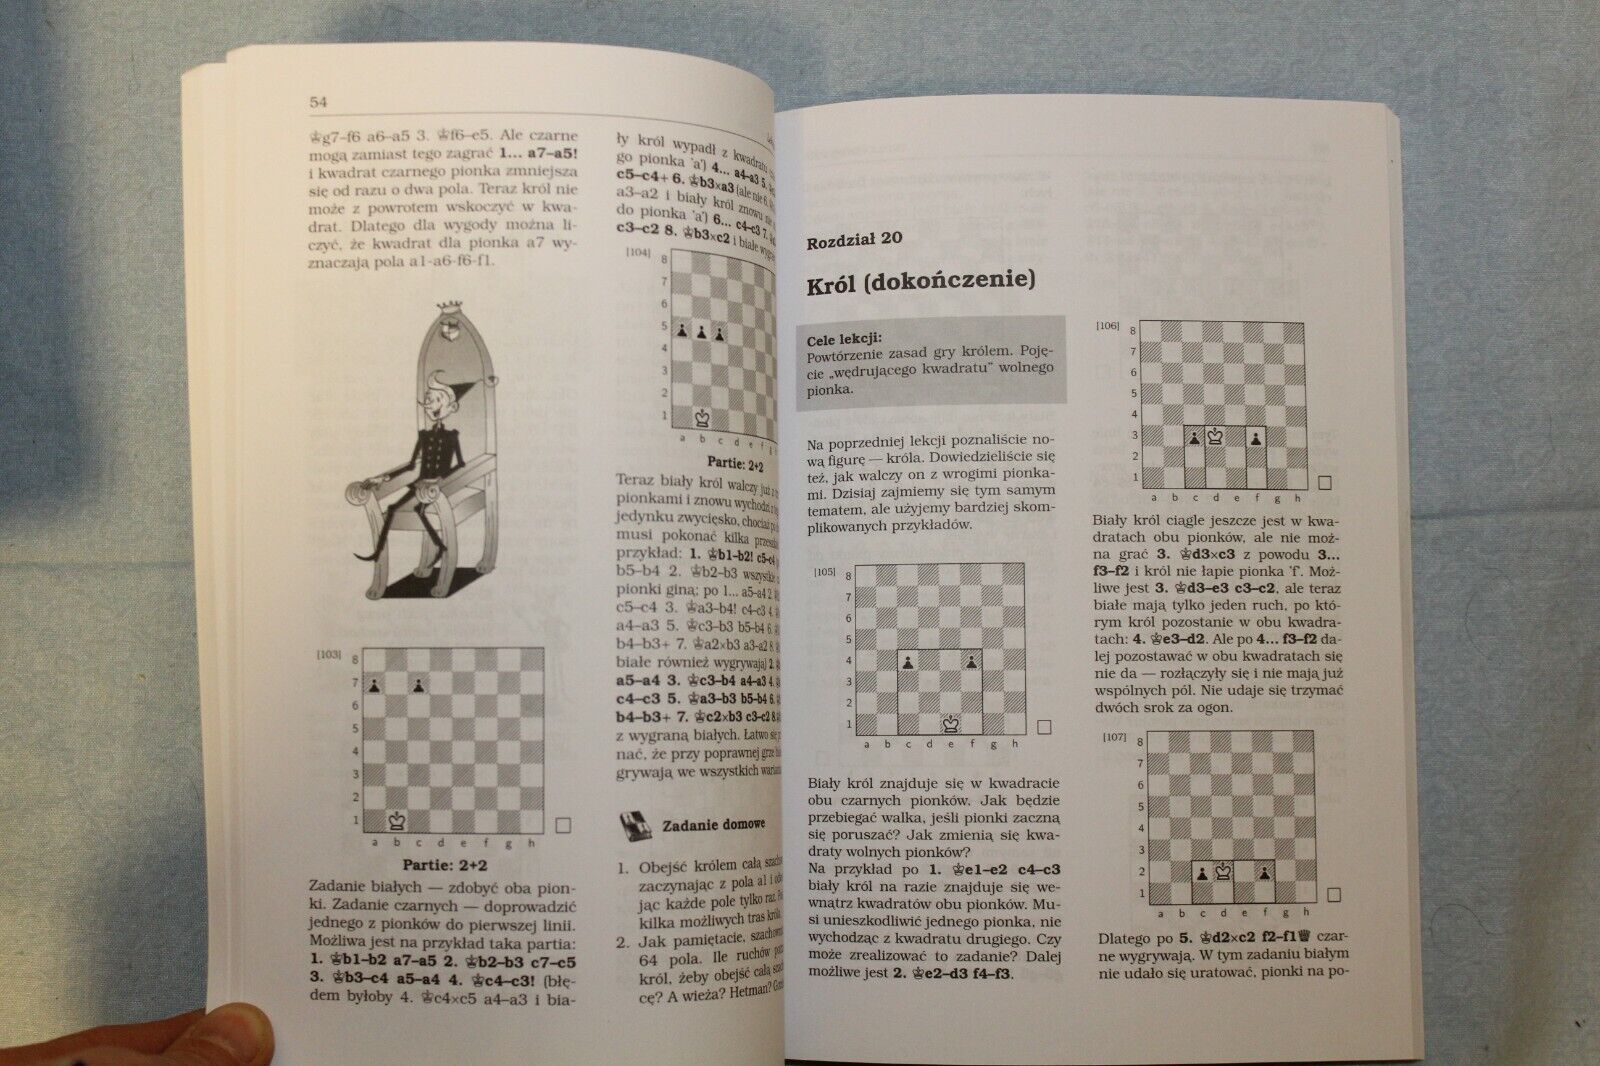 11395.Polish Chess Book: Karpov, Szingiriej. Szkolny Podrecznik Szachowy. 2009